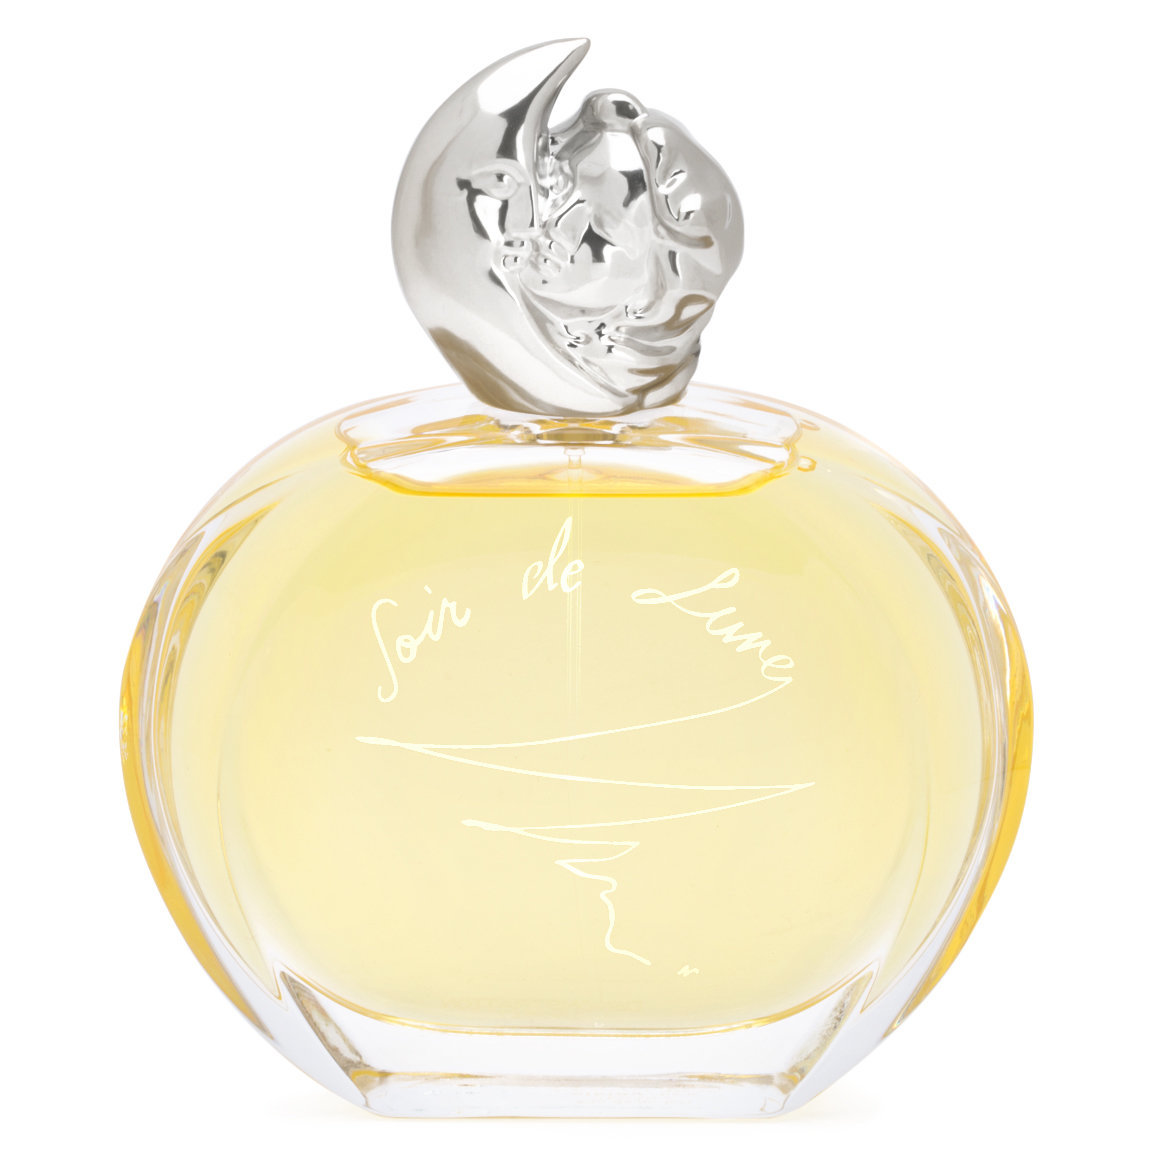 Sisley-Paris Soir de Lune Eau de Parfum 100 ml | Beautylish